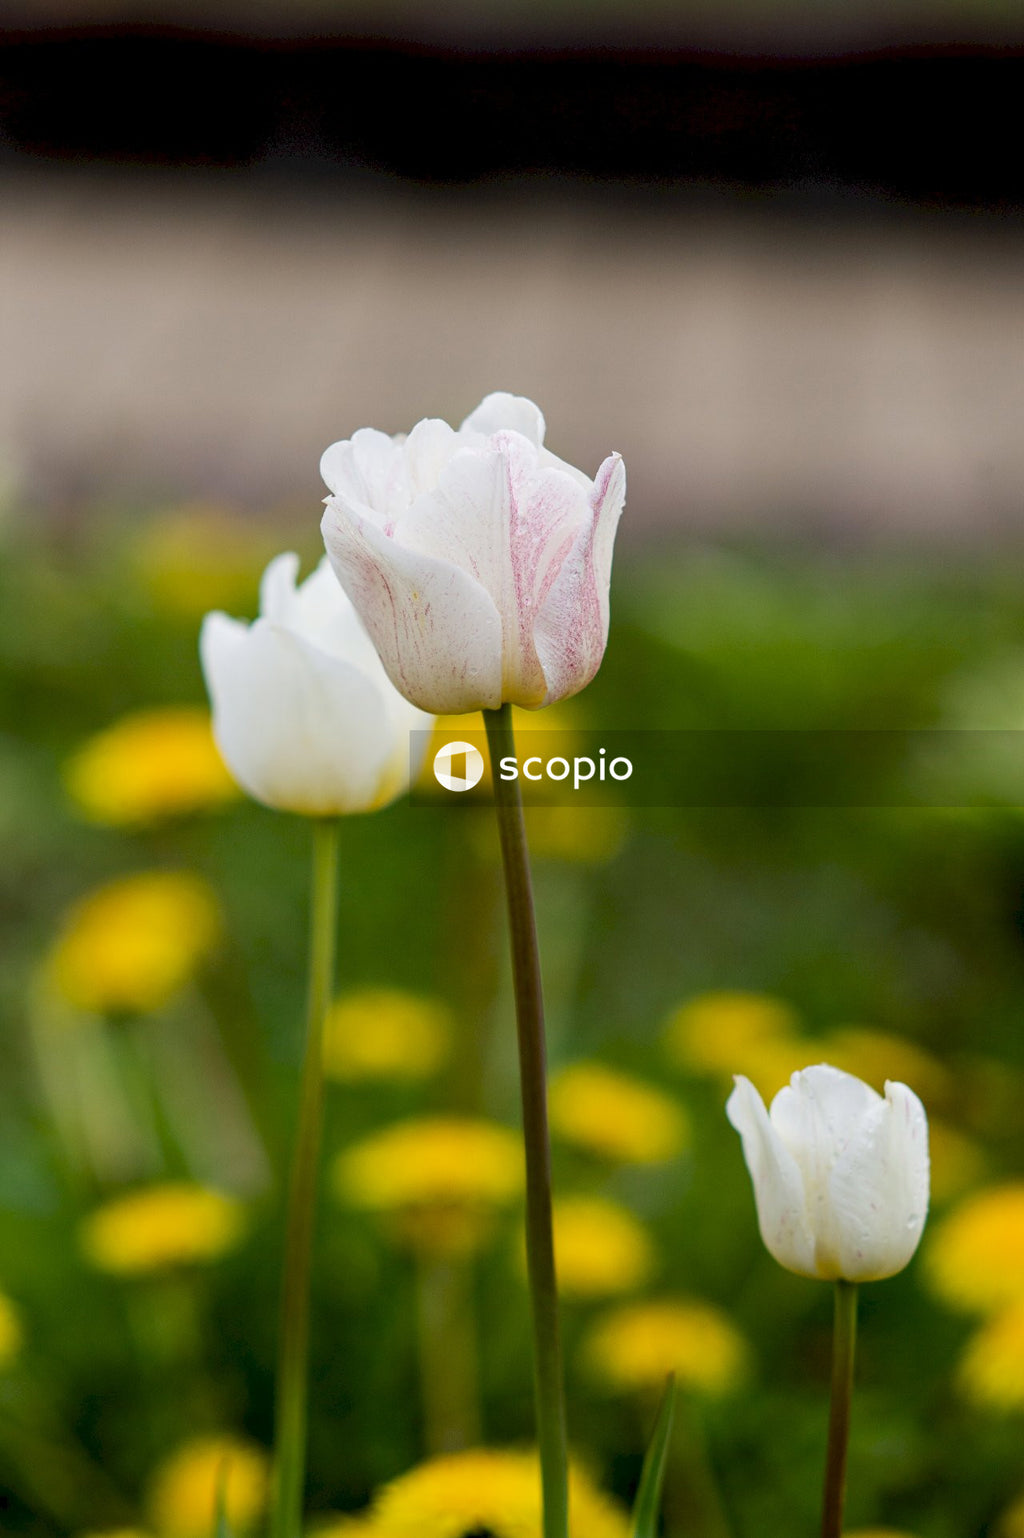 White flower in tilt shift lens